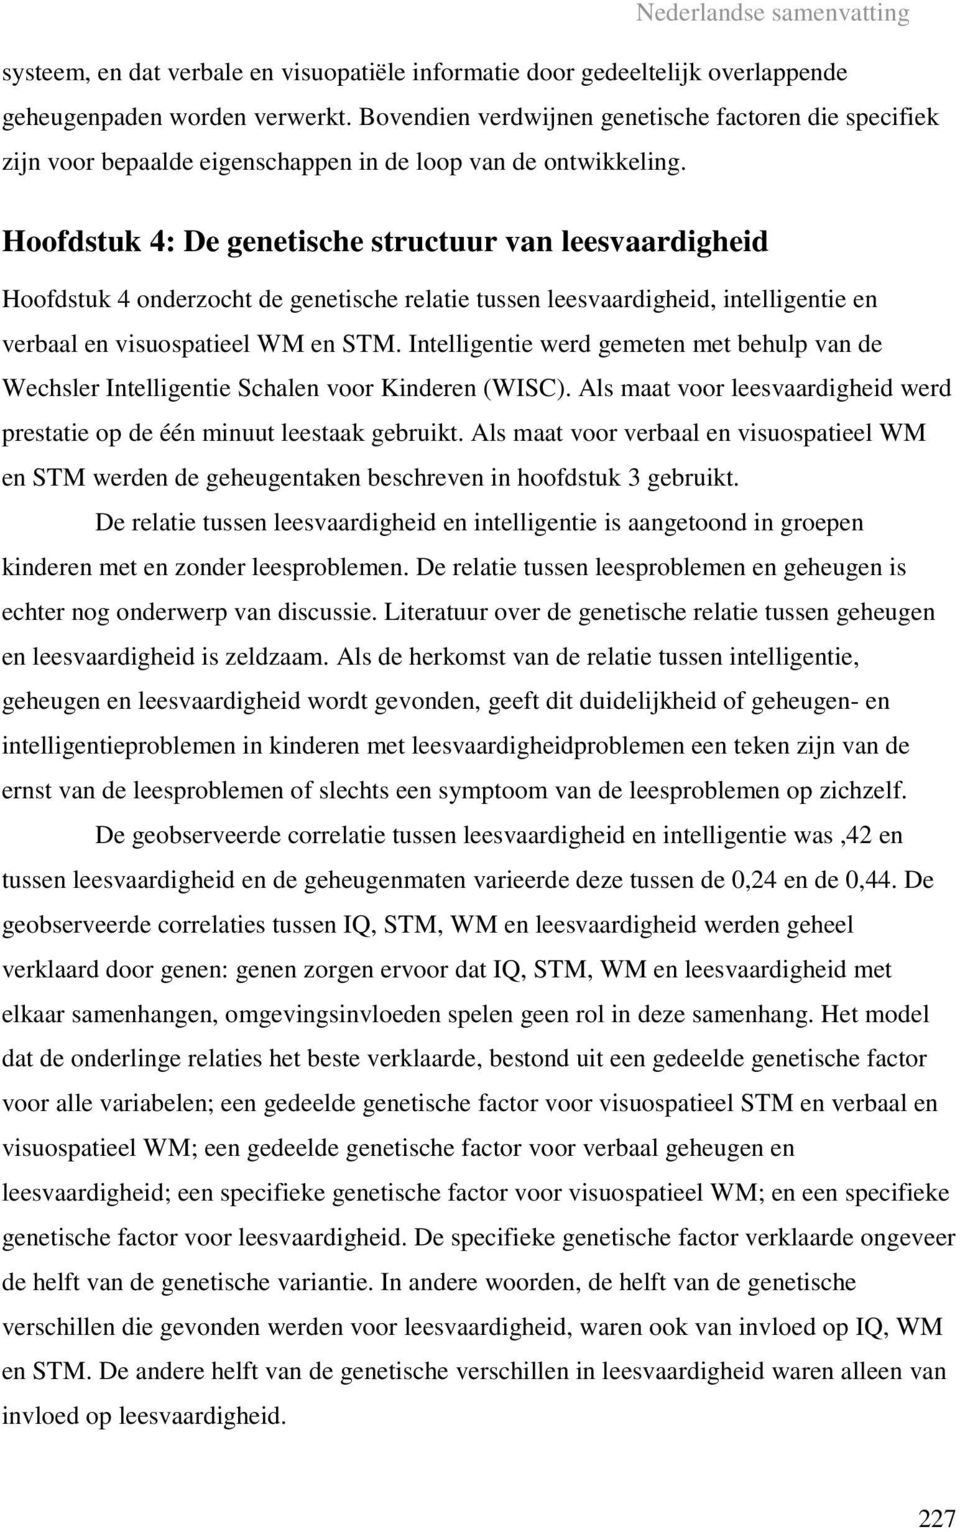 Hoofdstuk 4: De genetische structuur van leesvaardigheid Hoofdstuk 4 onderzocht de genetische relatie tussen leesvaardigheid, intelligentie en verbaal en visuospatieel WM en STM.